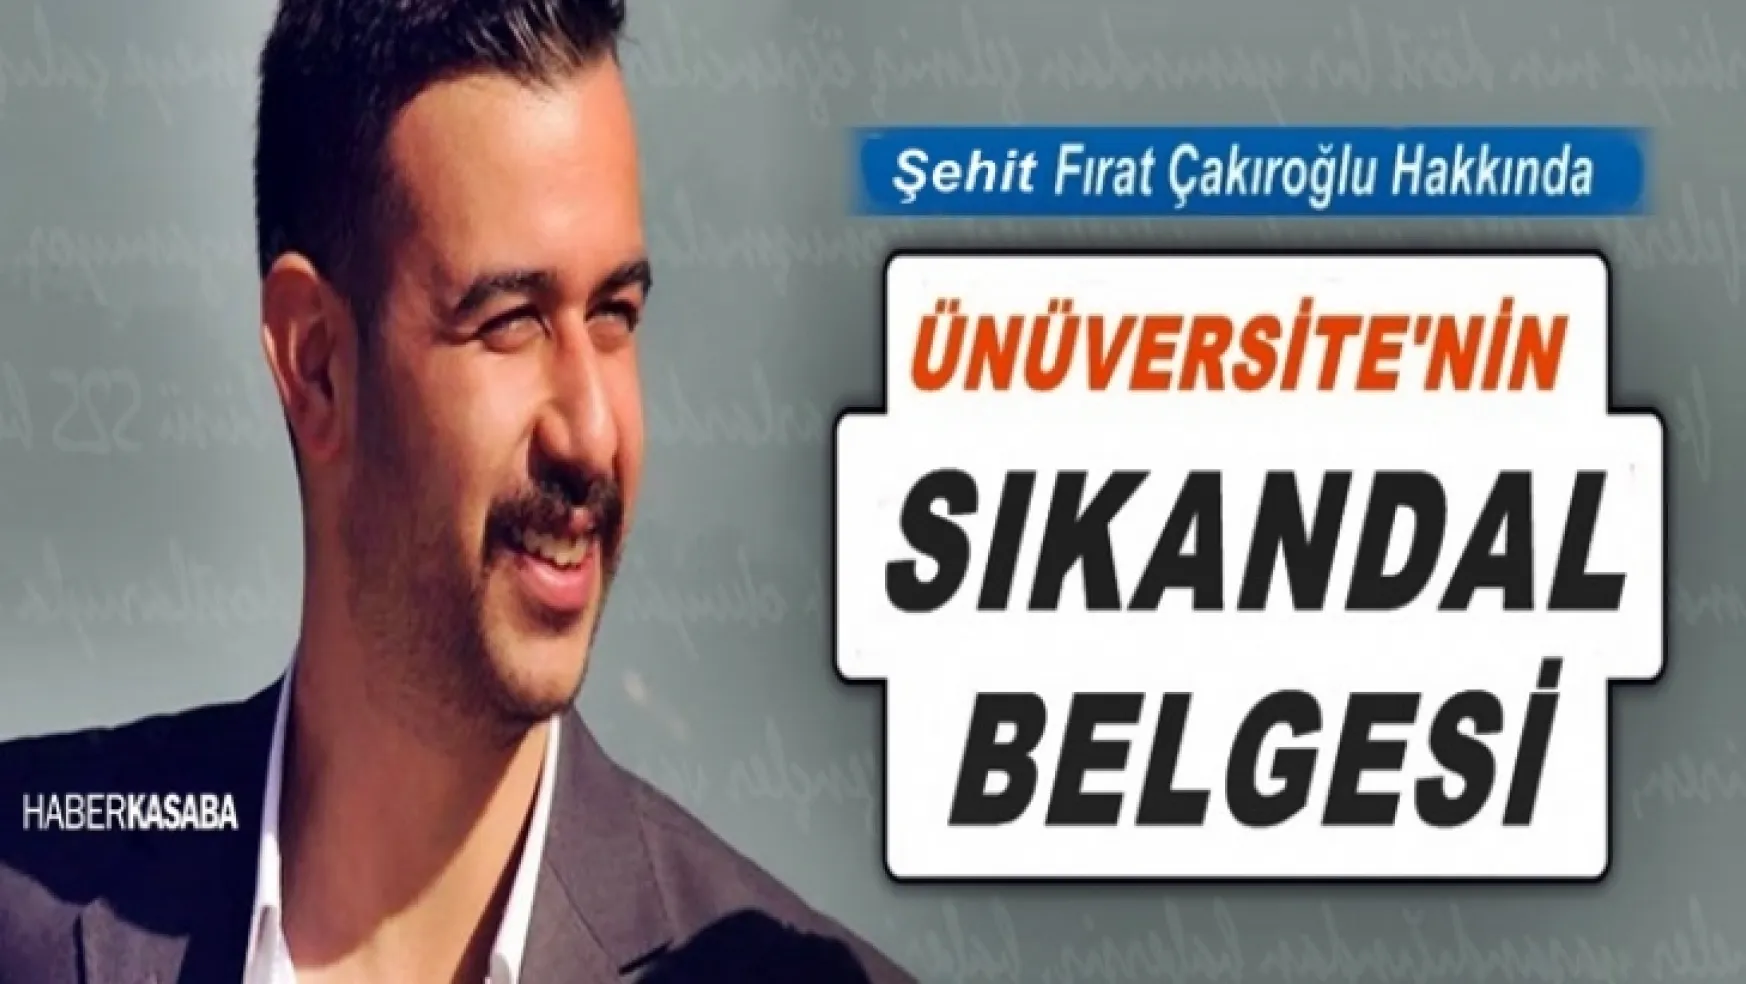 Şehit Fırat Çakıroğlu hakkında Üniversite'nin skandal belgesi